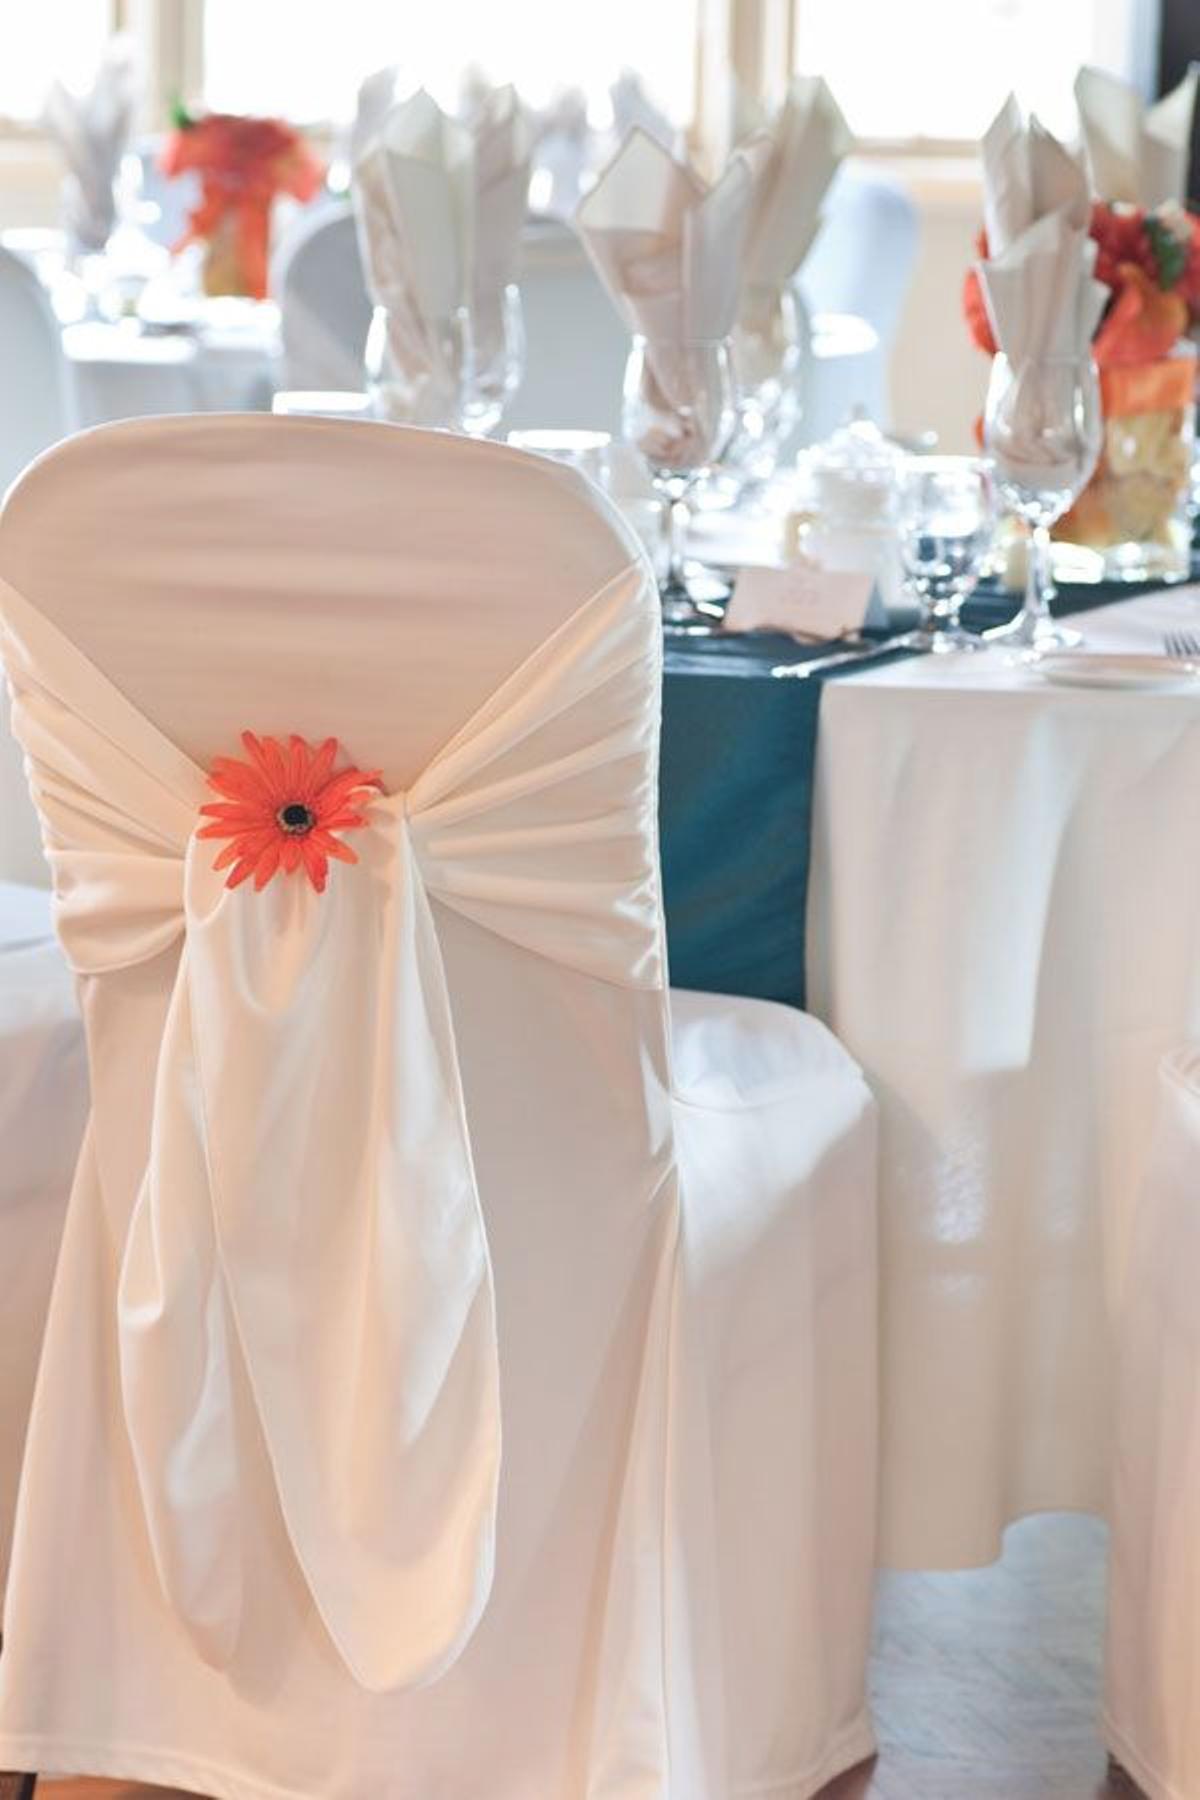 ¿Cómo decorar las sillas del banquete?: con flores naturales